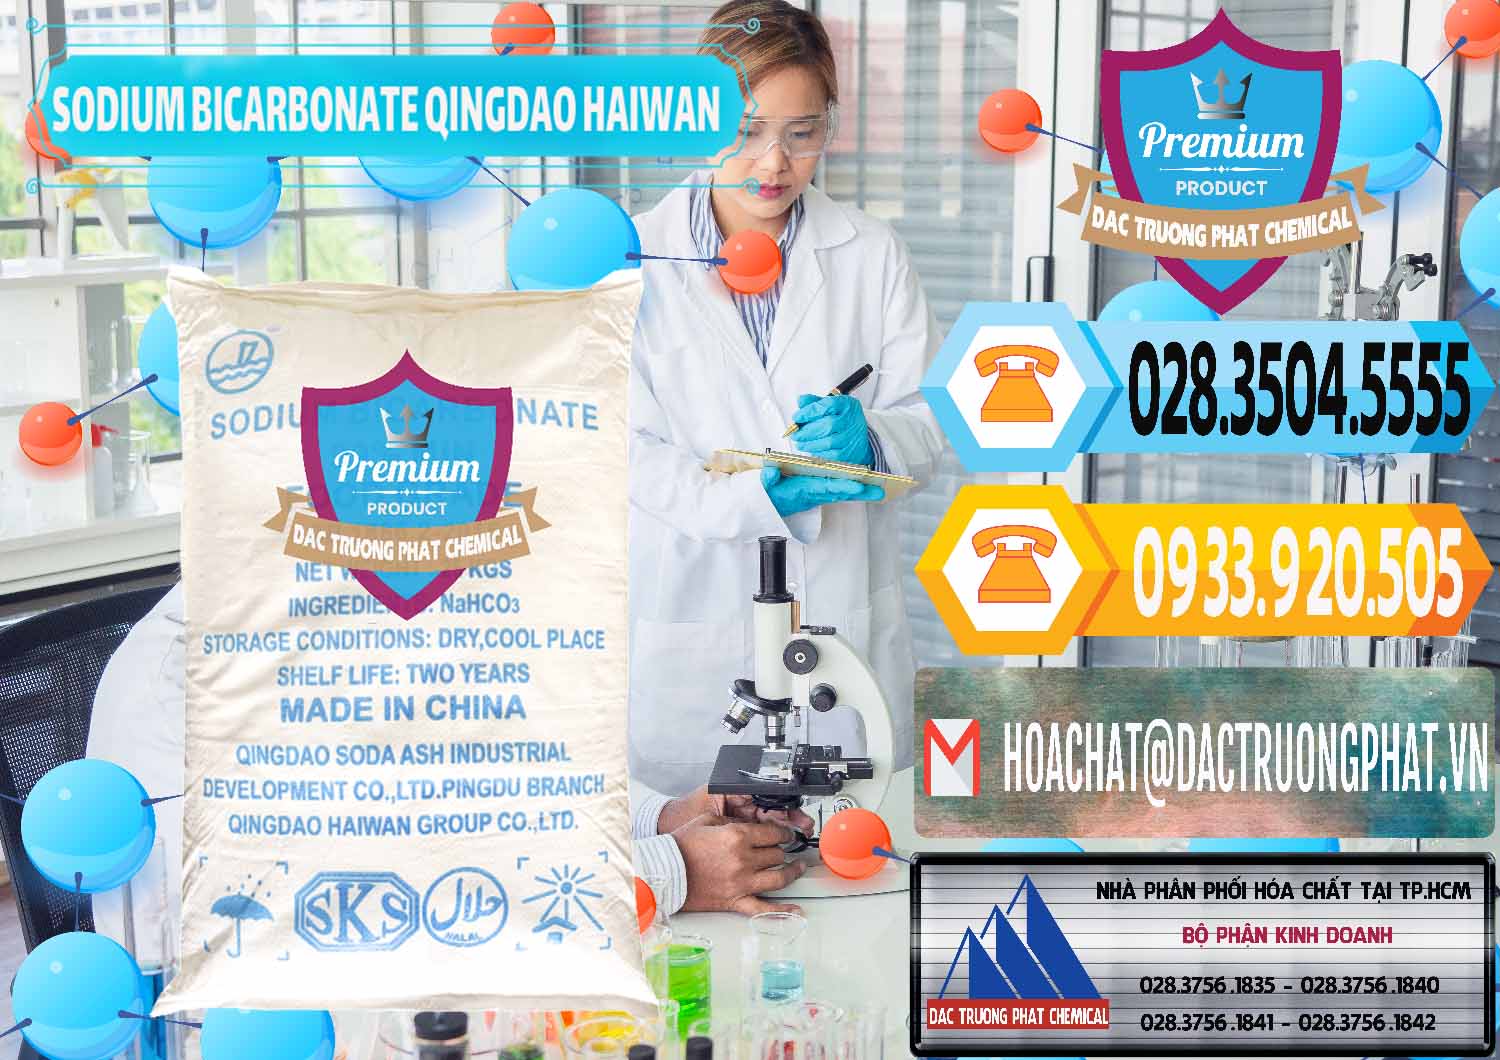 Công ty cung ứng ( bán ) Sodium Bicarbonate – Bicar NaHCO3 Food Grade Qingdao Haiwan Trung Quốc China - 0258 - Đơn vị bán _ phân phối hóa chất tại TP.HCM - hoachattayrua.net